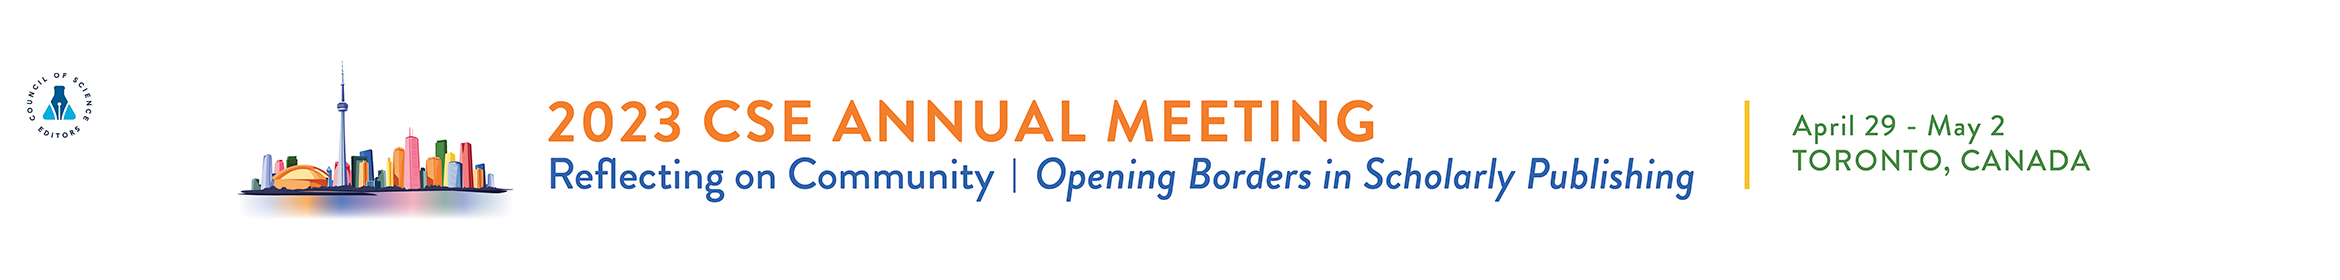 2023 CSE Annual Meeting Main banner